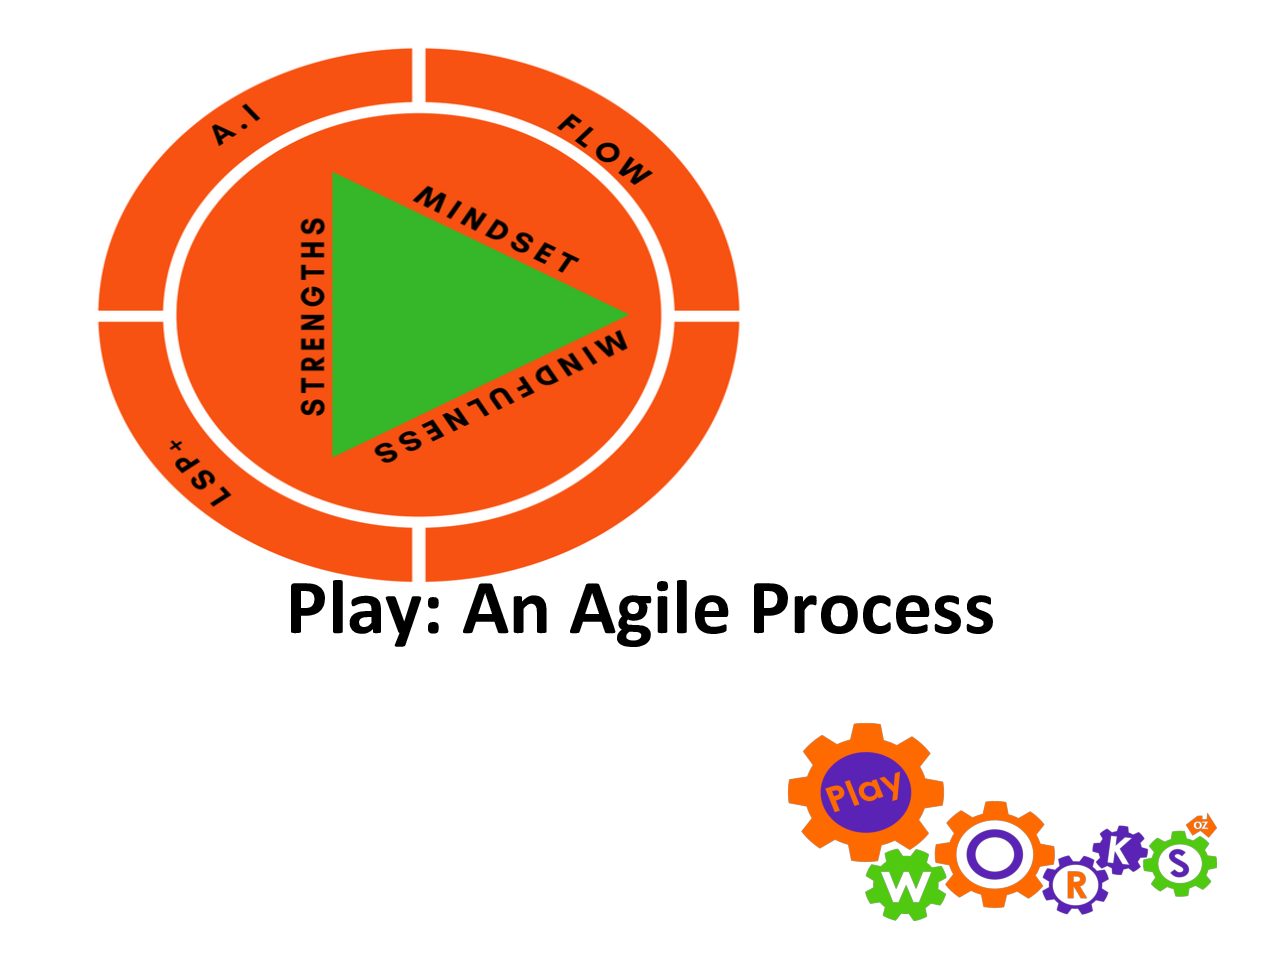 Play, An Agile Process